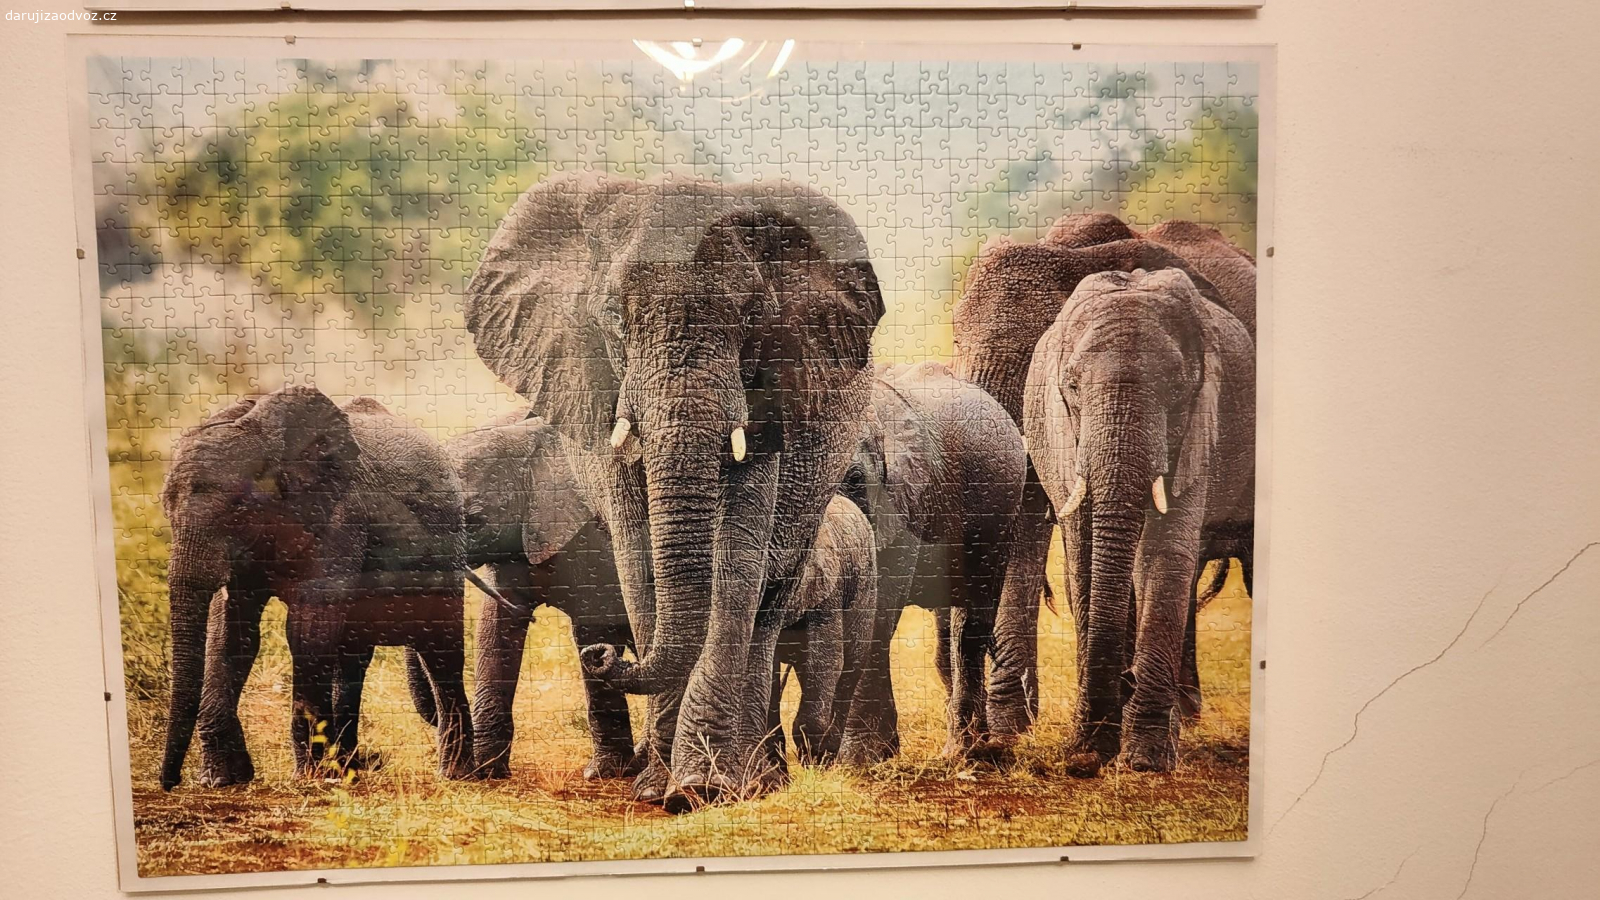 zarámované puzzle sloni. rozměry 70x50 cm
daruji za odvoz, ideálně předání zítra dopoledne na Hradčanech